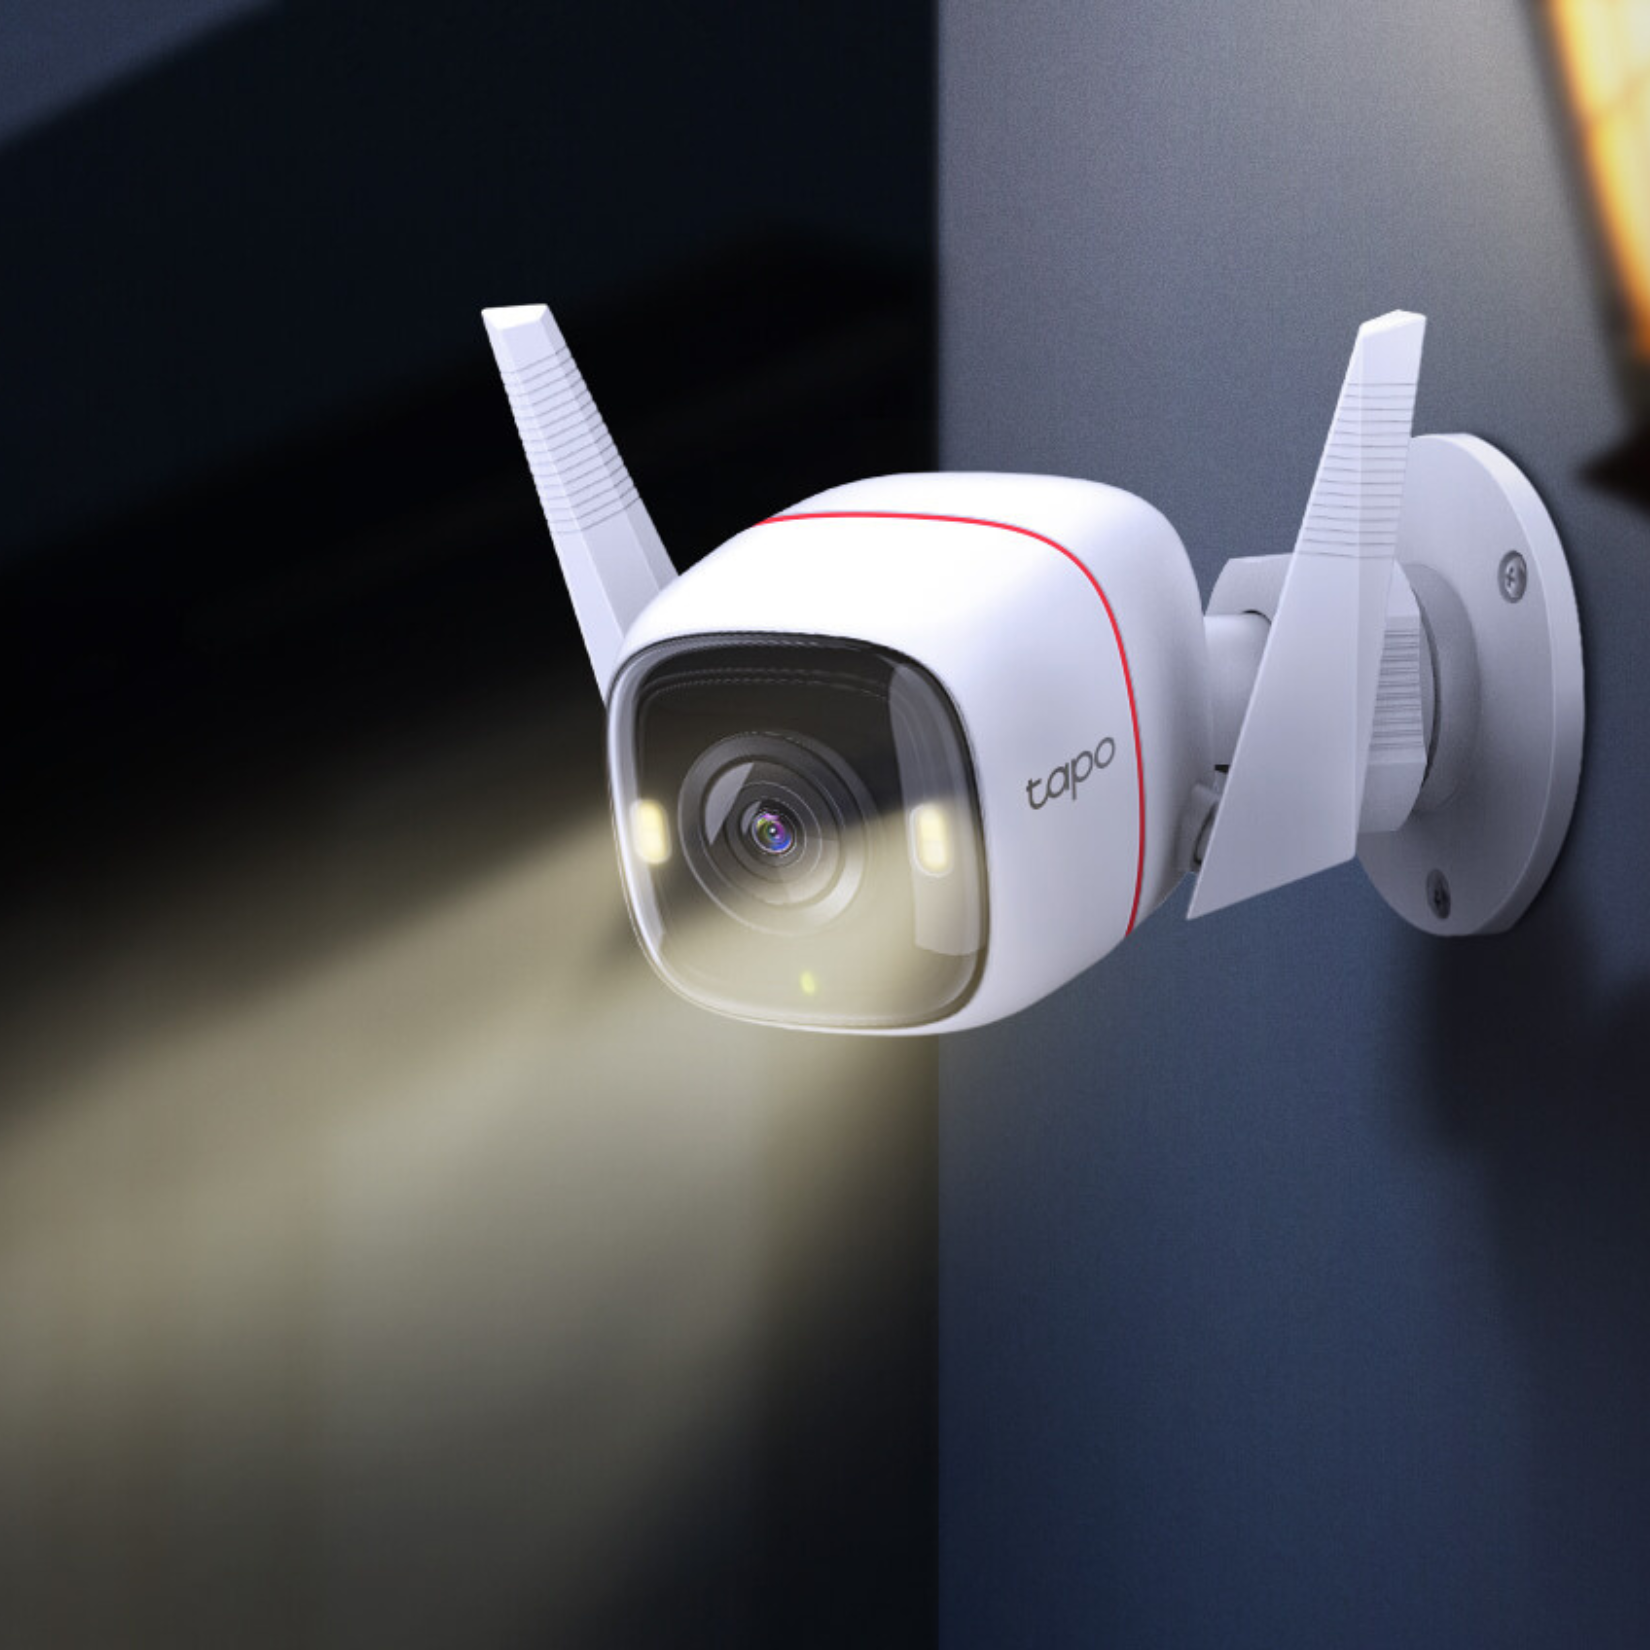 Tapo C200 de TP-Link, la video cámara de vigilancia: Reseña con